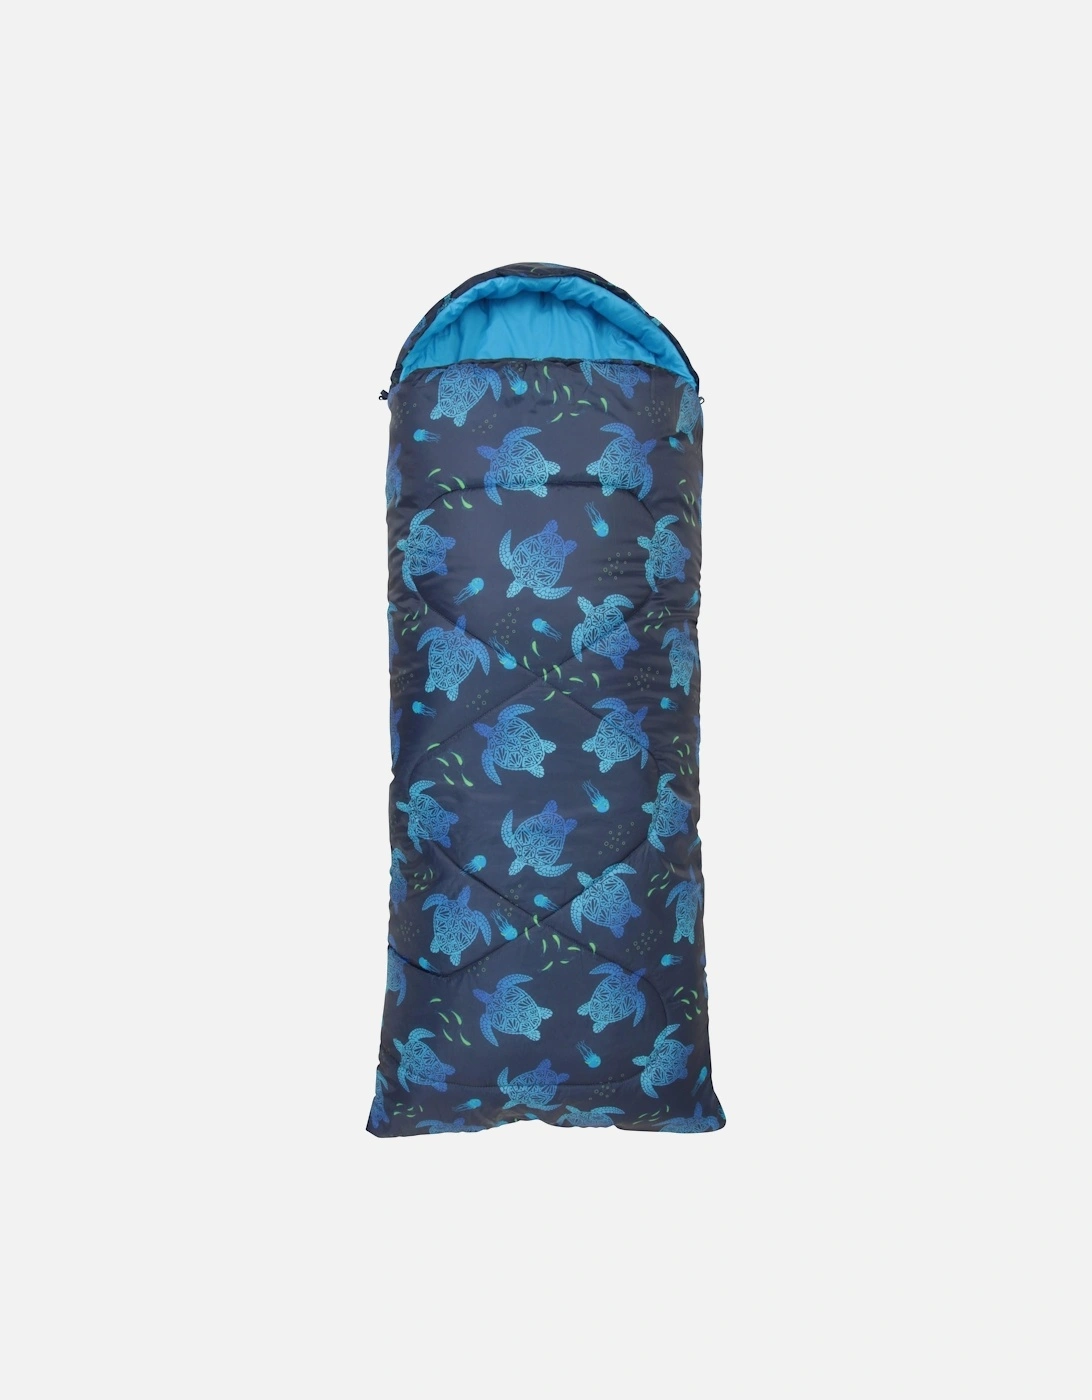 Unisex Adult Apex Sleeping Bag Set, 2 of 1